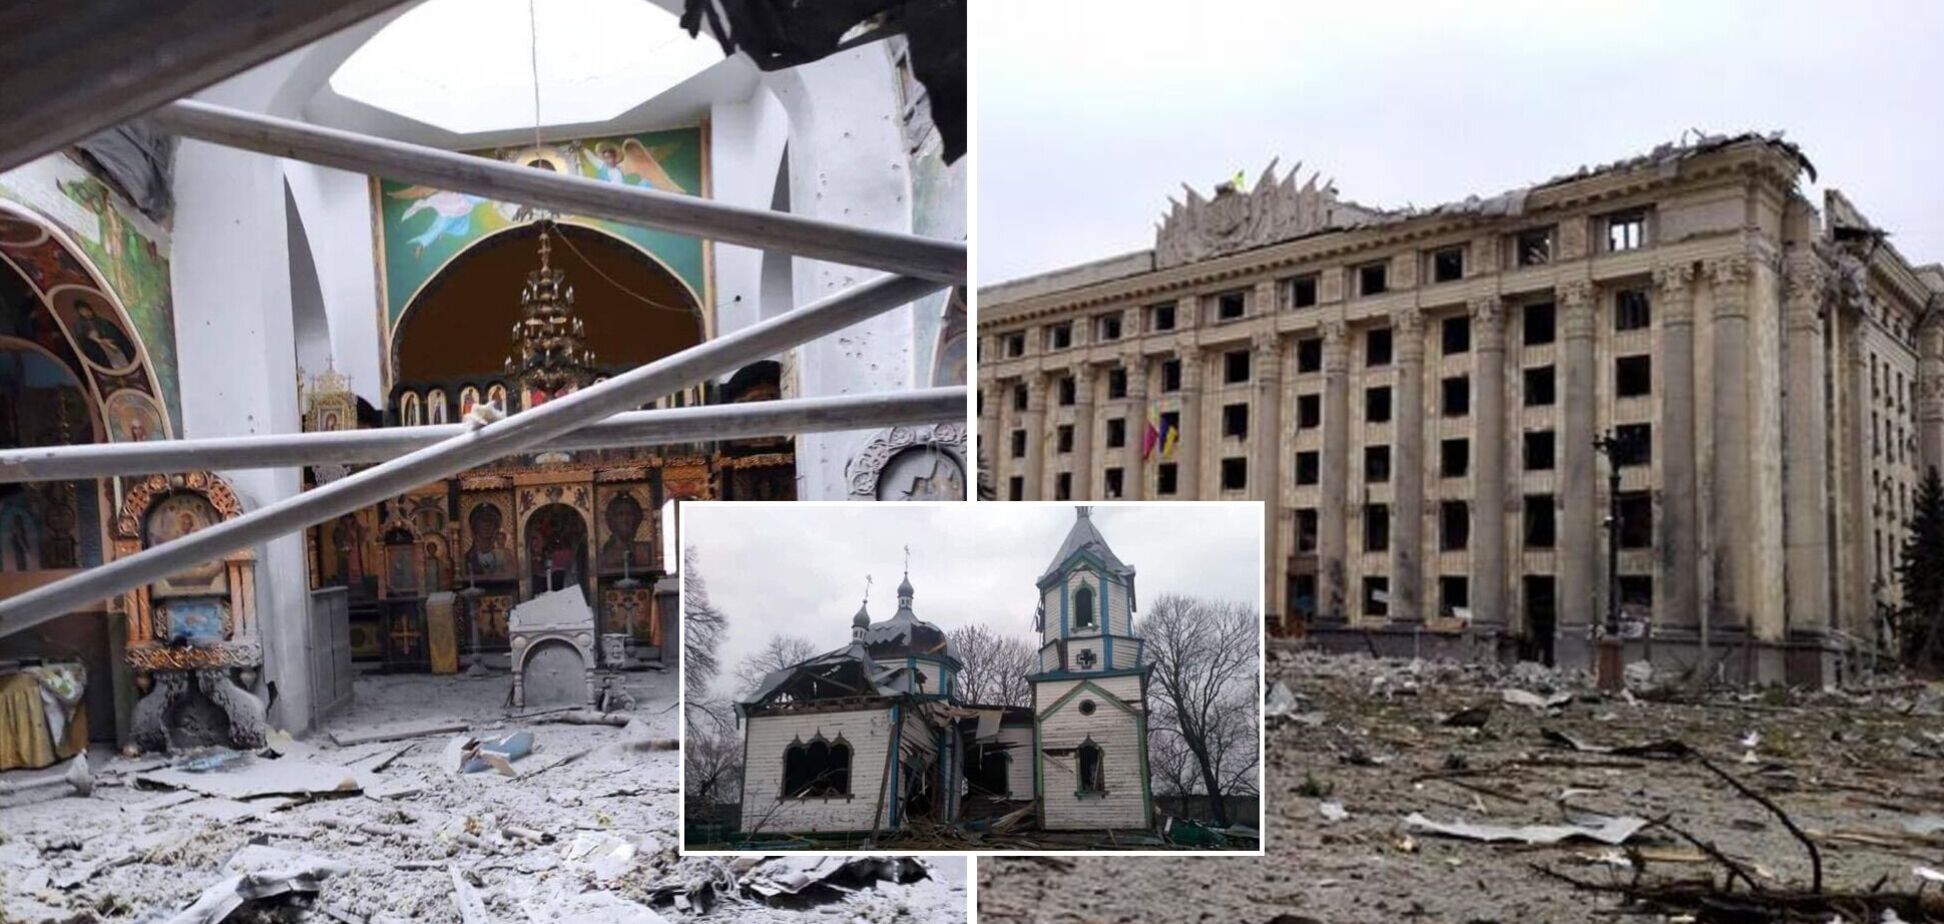 Російські окупанти за місяць знищили 135 об'єктів культурної спадщини України